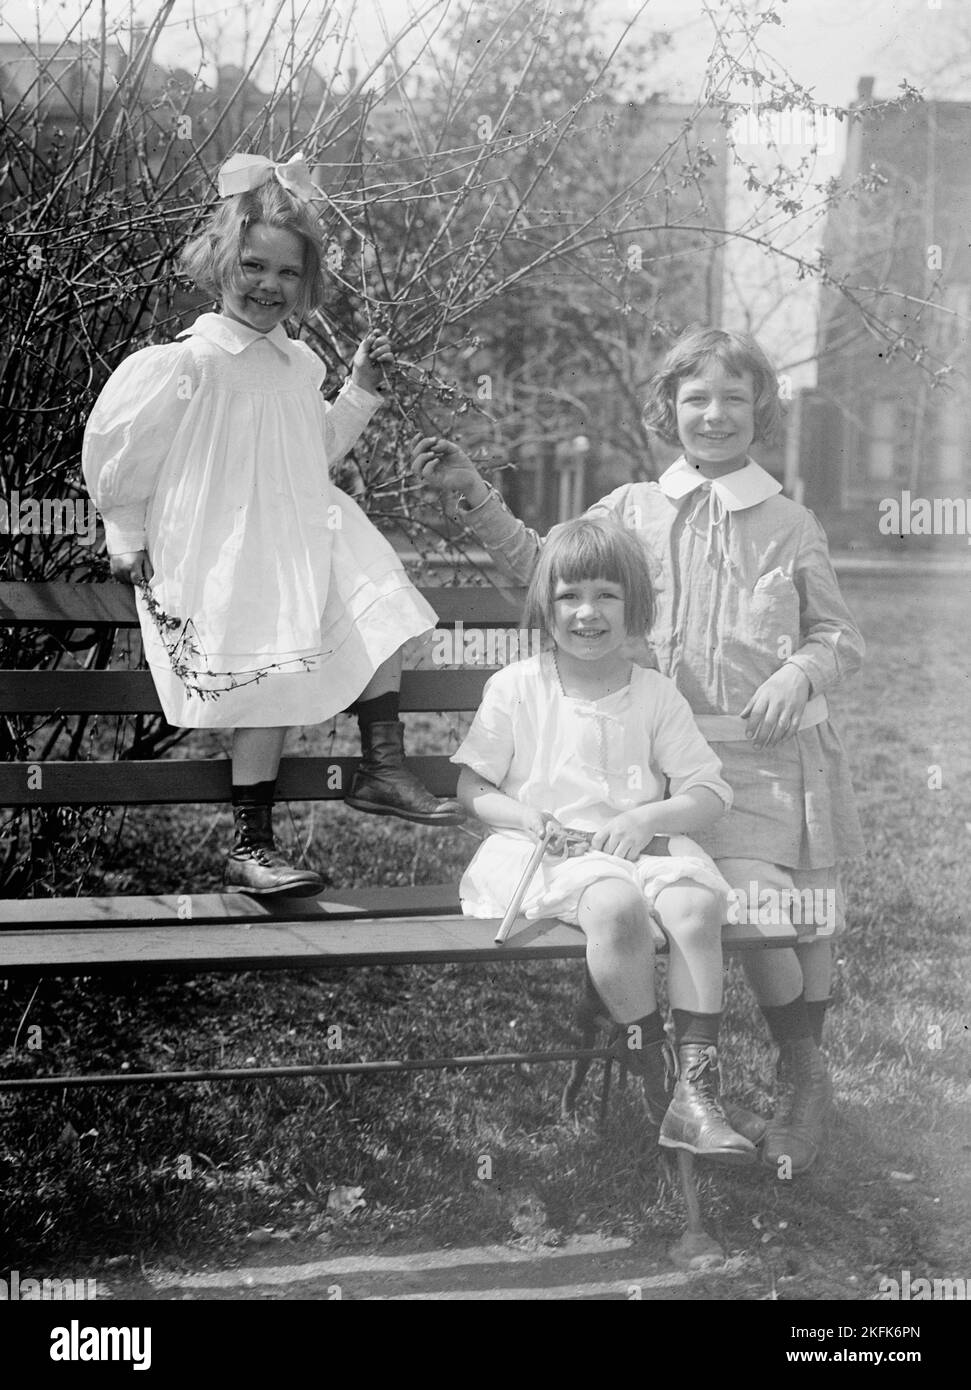 Carlton, George Und Jou-Jou Colt, 1913. Enkel von Lebaron Bradford Colt, Senator von Rhode Island. Sitzendes Kind hält eine Spielzeugpistole in der Hand. Stockfoto